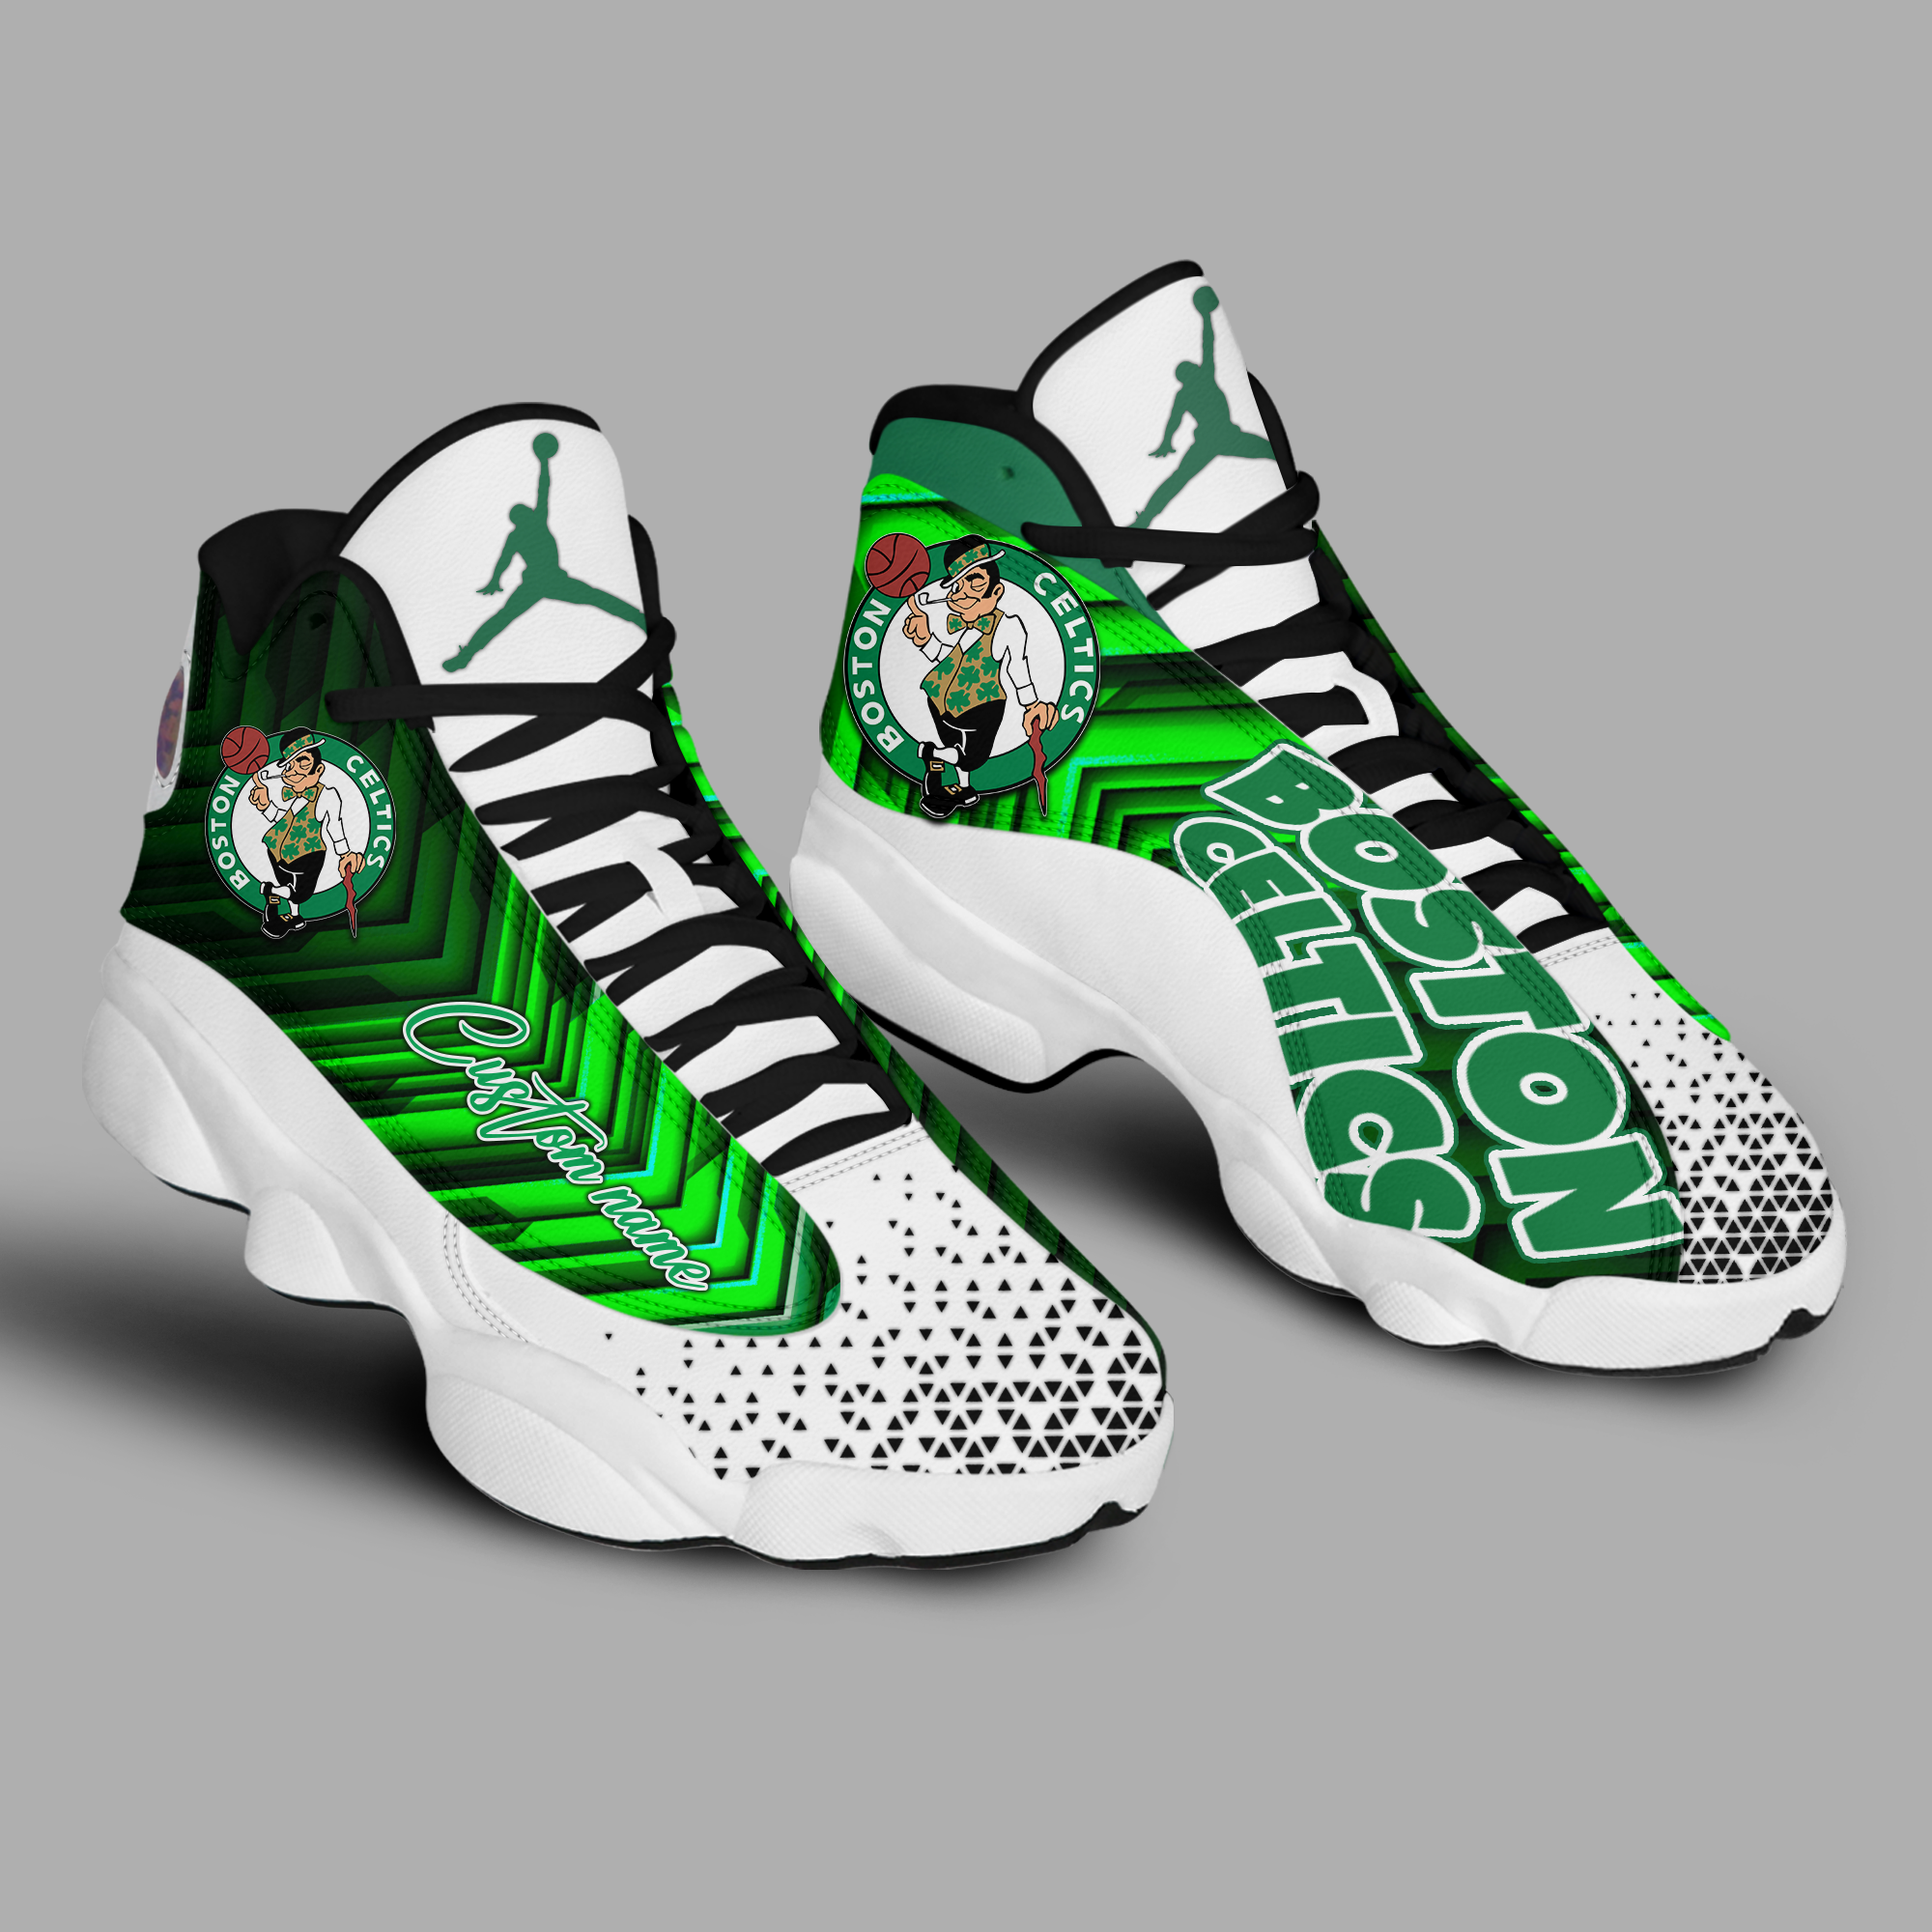 Boston Celtics – For Bare Feet